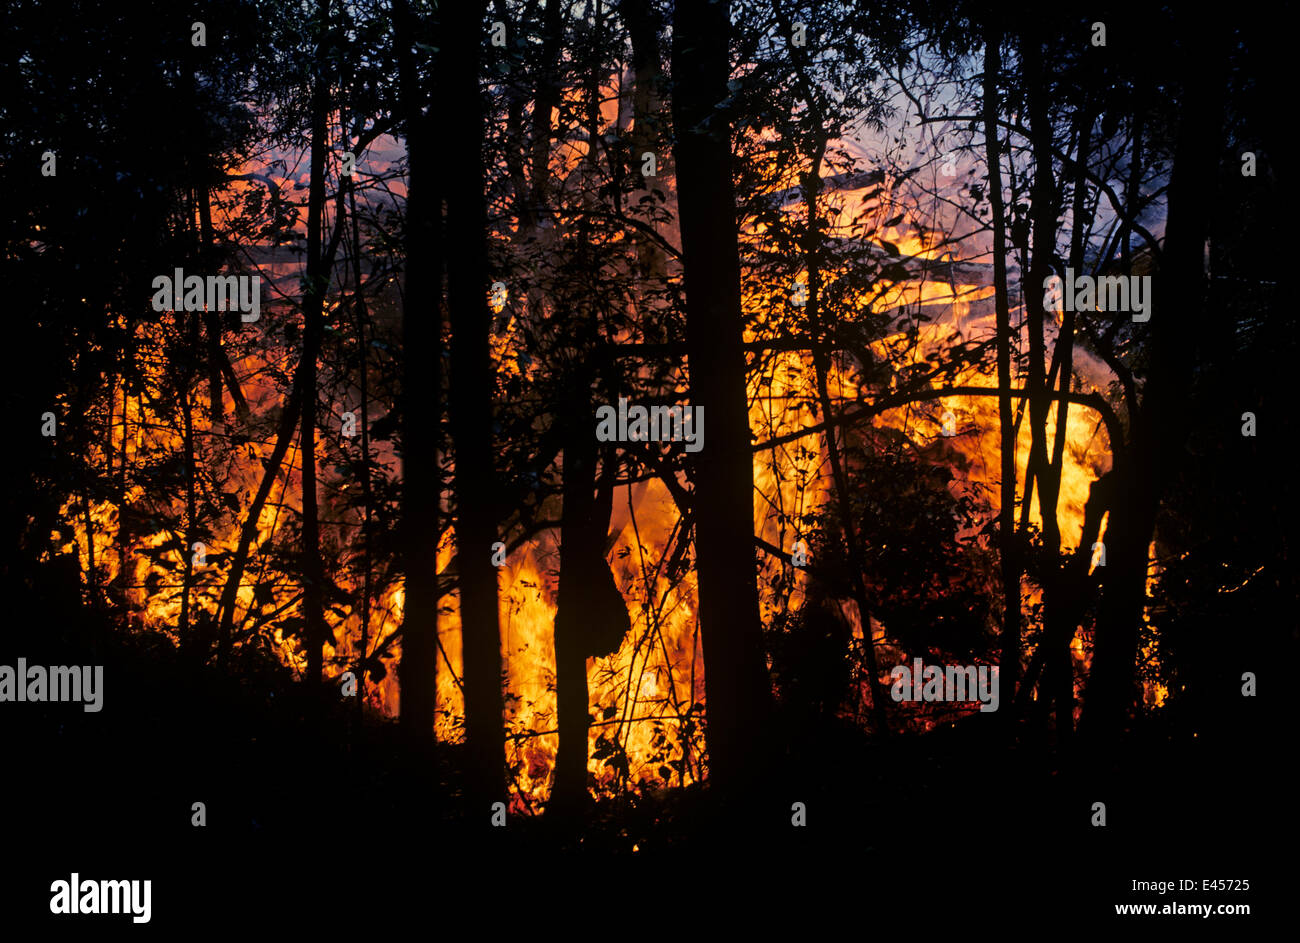 Coulée de feu correspondant et se déplaçant dans la forêt, Kimanura éruption volcanique des Virunga, NP, République démocratique du Congo (ex-Zaïre) Banque D'Images